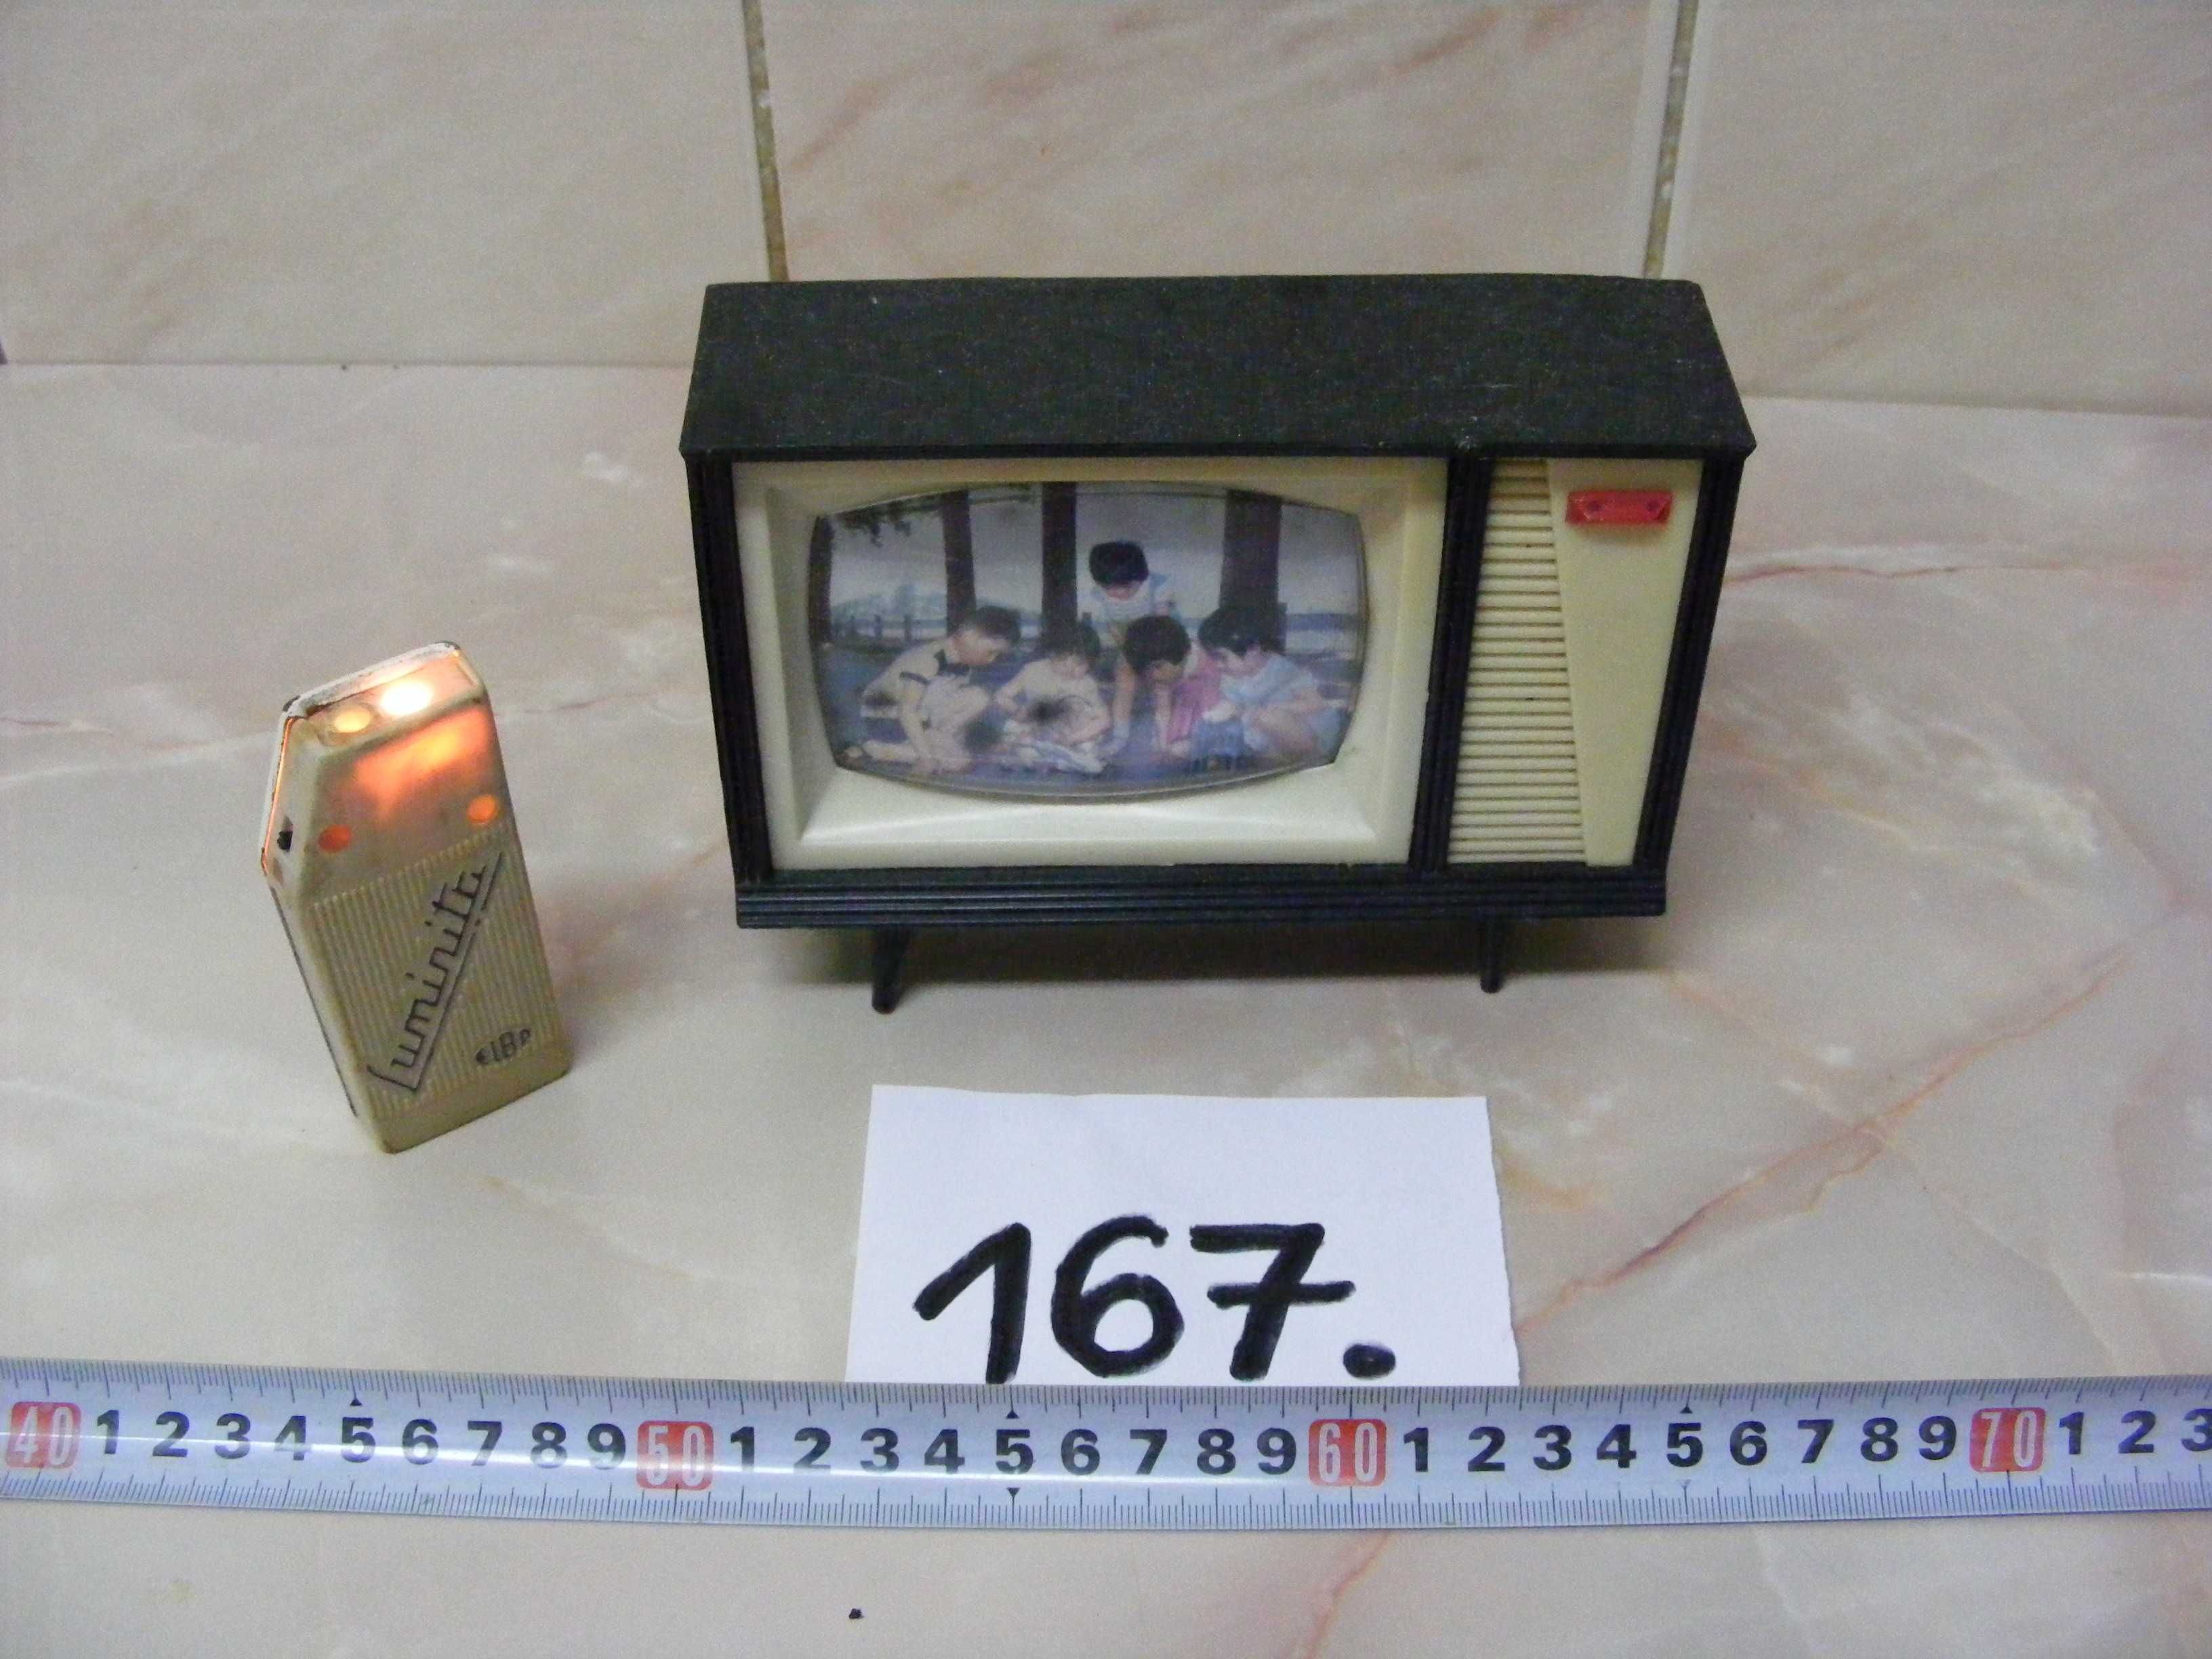 Lantenă ,,Luminița,, și pușculiță TV, anii 1970 (cod 167)